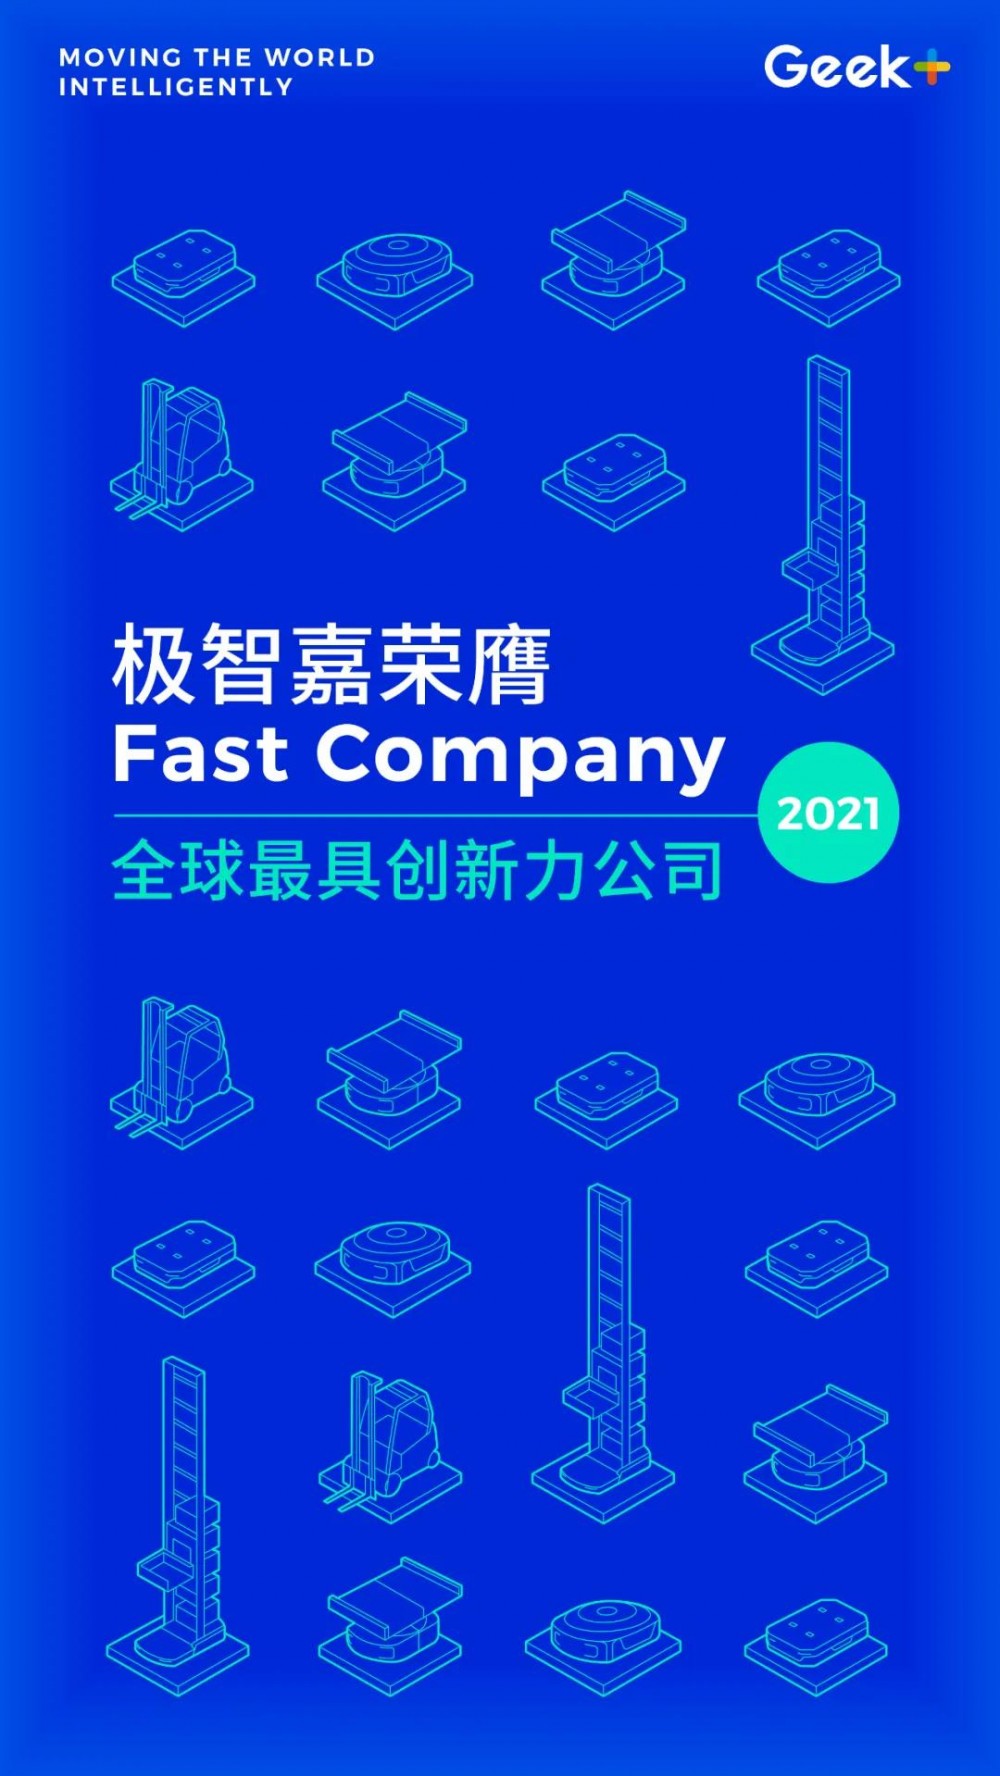 【极智嘉】唯一获奖中国AMR企业！极智嘉荣膺Fast Company 2021全球最具创新力公司